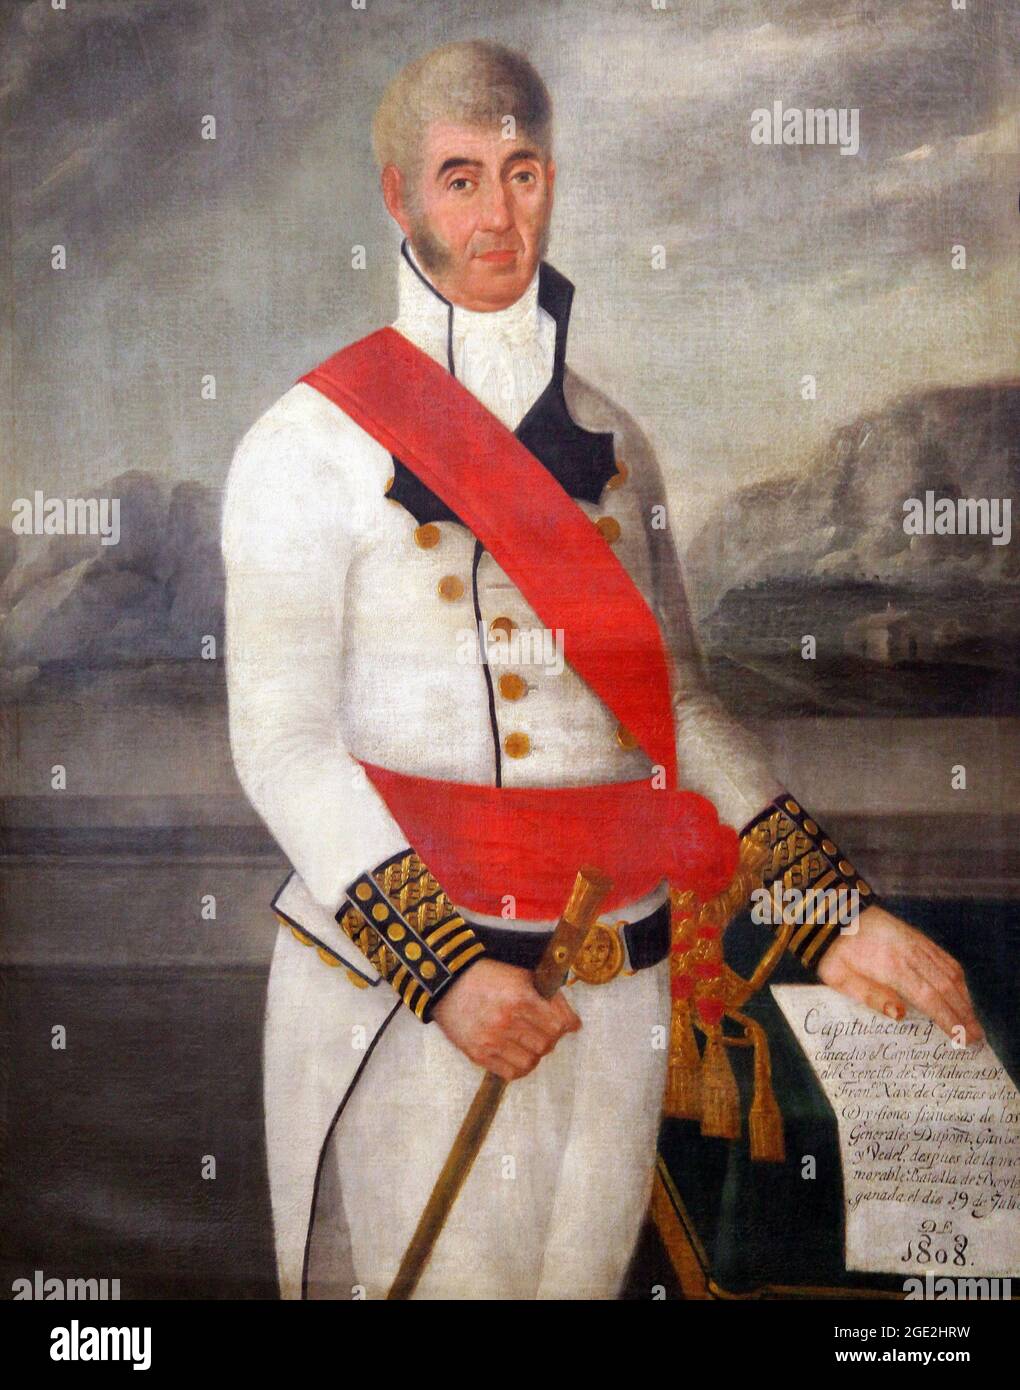 Francisco Javier CastañosOlavide, 1° duca di Bailén (22 aprile 1758 – 24 settembre 1852) generale e politico spagnolo che eccelle durante le Guerre rivoluzionarie francesi e le Guerre Napoleoniche. Foto Stock